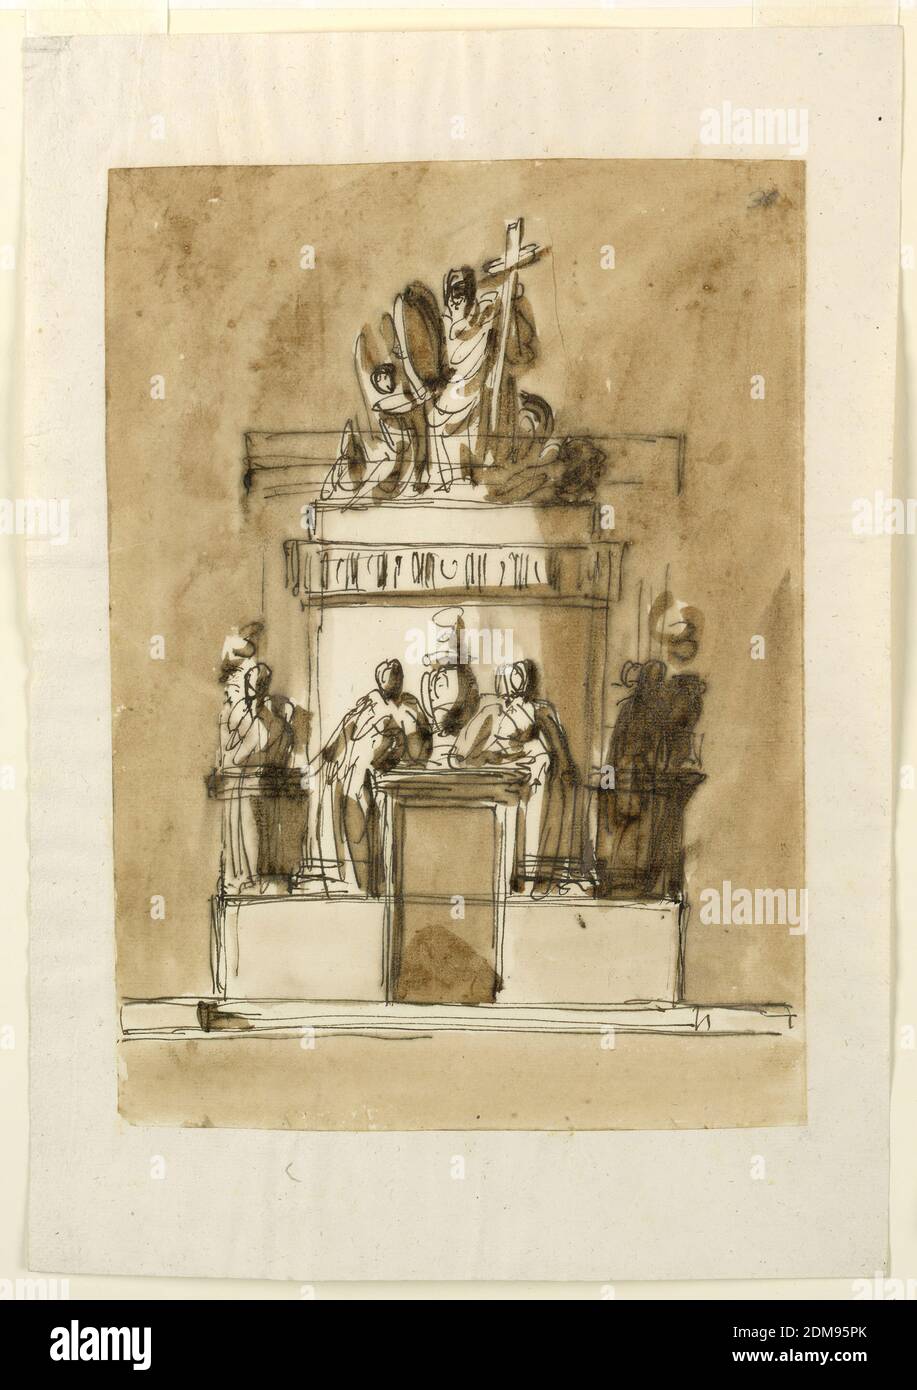 Entwurf für ein Sepulchral-Denkmal von König Ludwig XVI von Frankreich, Giuseppe Barberi, Italienisch, 1746–1809, Feder und braune Tinte, Pinsel und braune Wäsche, die Basis hat einige Stufen, mit kleinen seitlichen Teilen in Mauerwerk. Die Struktur hat eine längliche Socke und einen auflösenden oberen runden turmarmen Teil. An der Vorderseite ist ein Türrahmen, auf dessen Entablatur zwei Frauen - die linke ist vorne zu sehen, die rechte im Profil - neben einer Urne mit einer Flamme lehnen. Sie stehen auf dem Sockel. Entsprechend seitlich stehen Frauen neben einer ähnlichen Urne, die auf einer scheinbar Balustrade stehen. Stockfoto